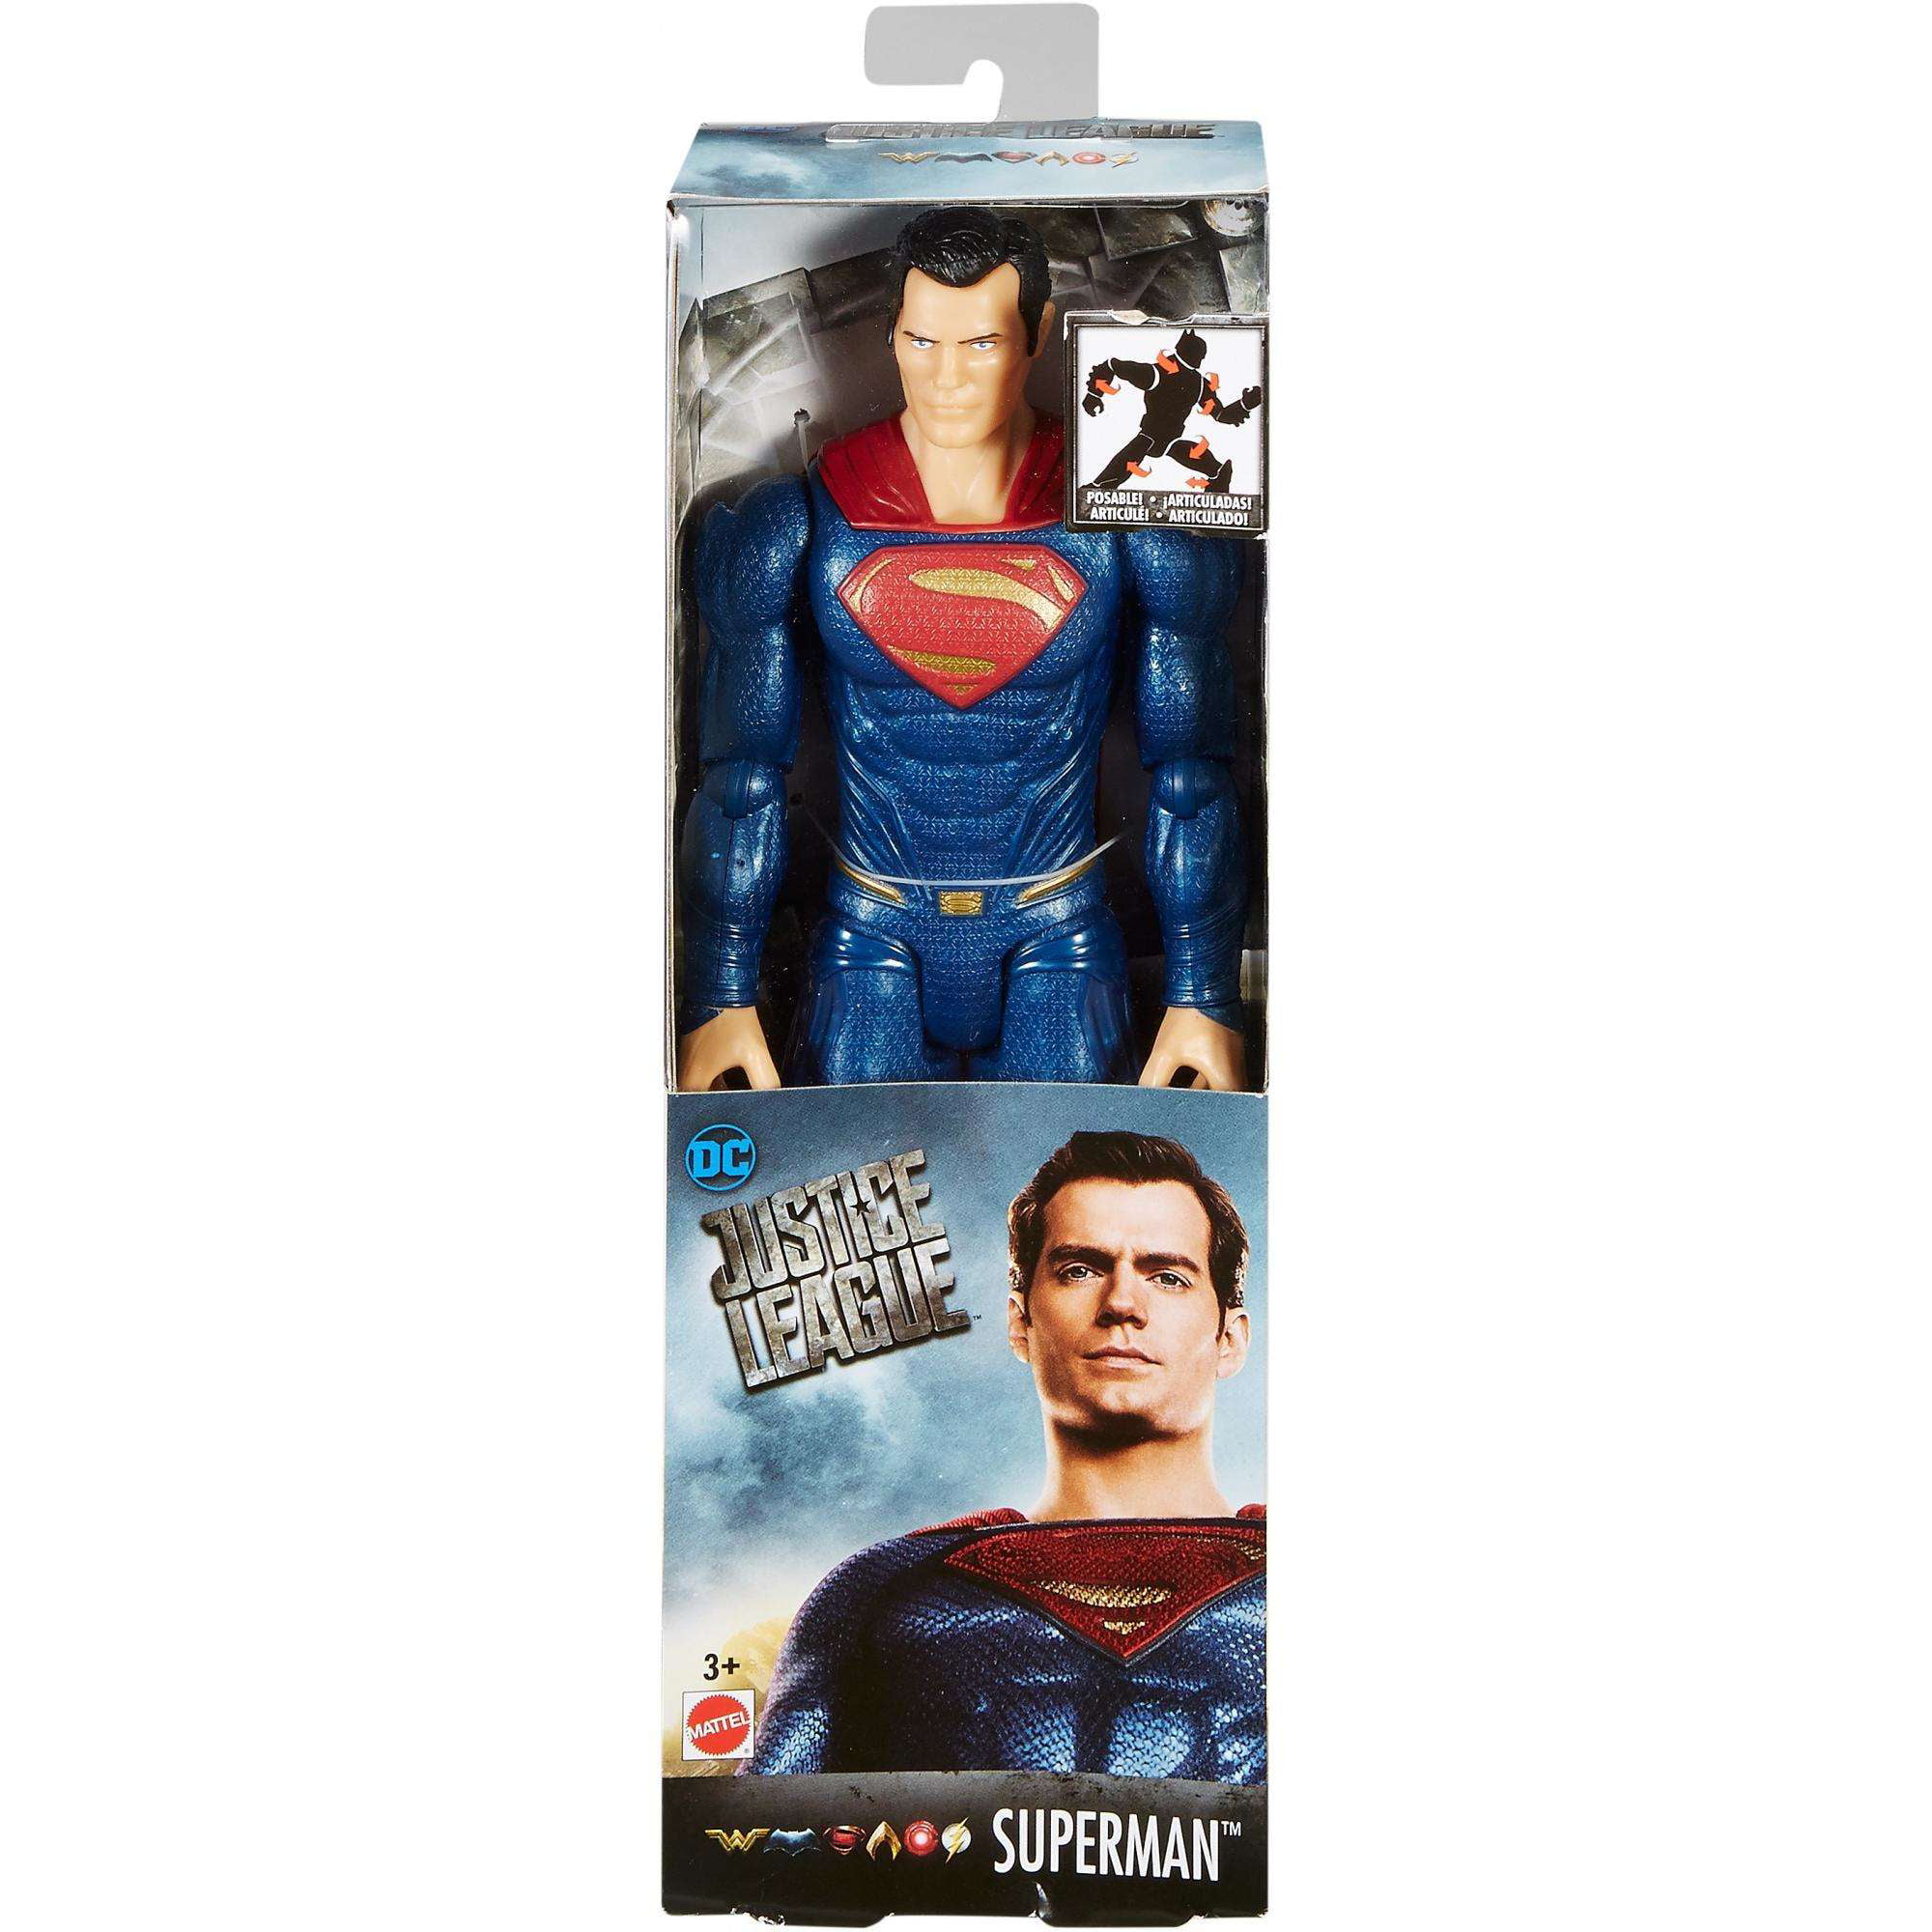 Justice Liga Action Superman Steel Anzug 30cm Figure Mattel 